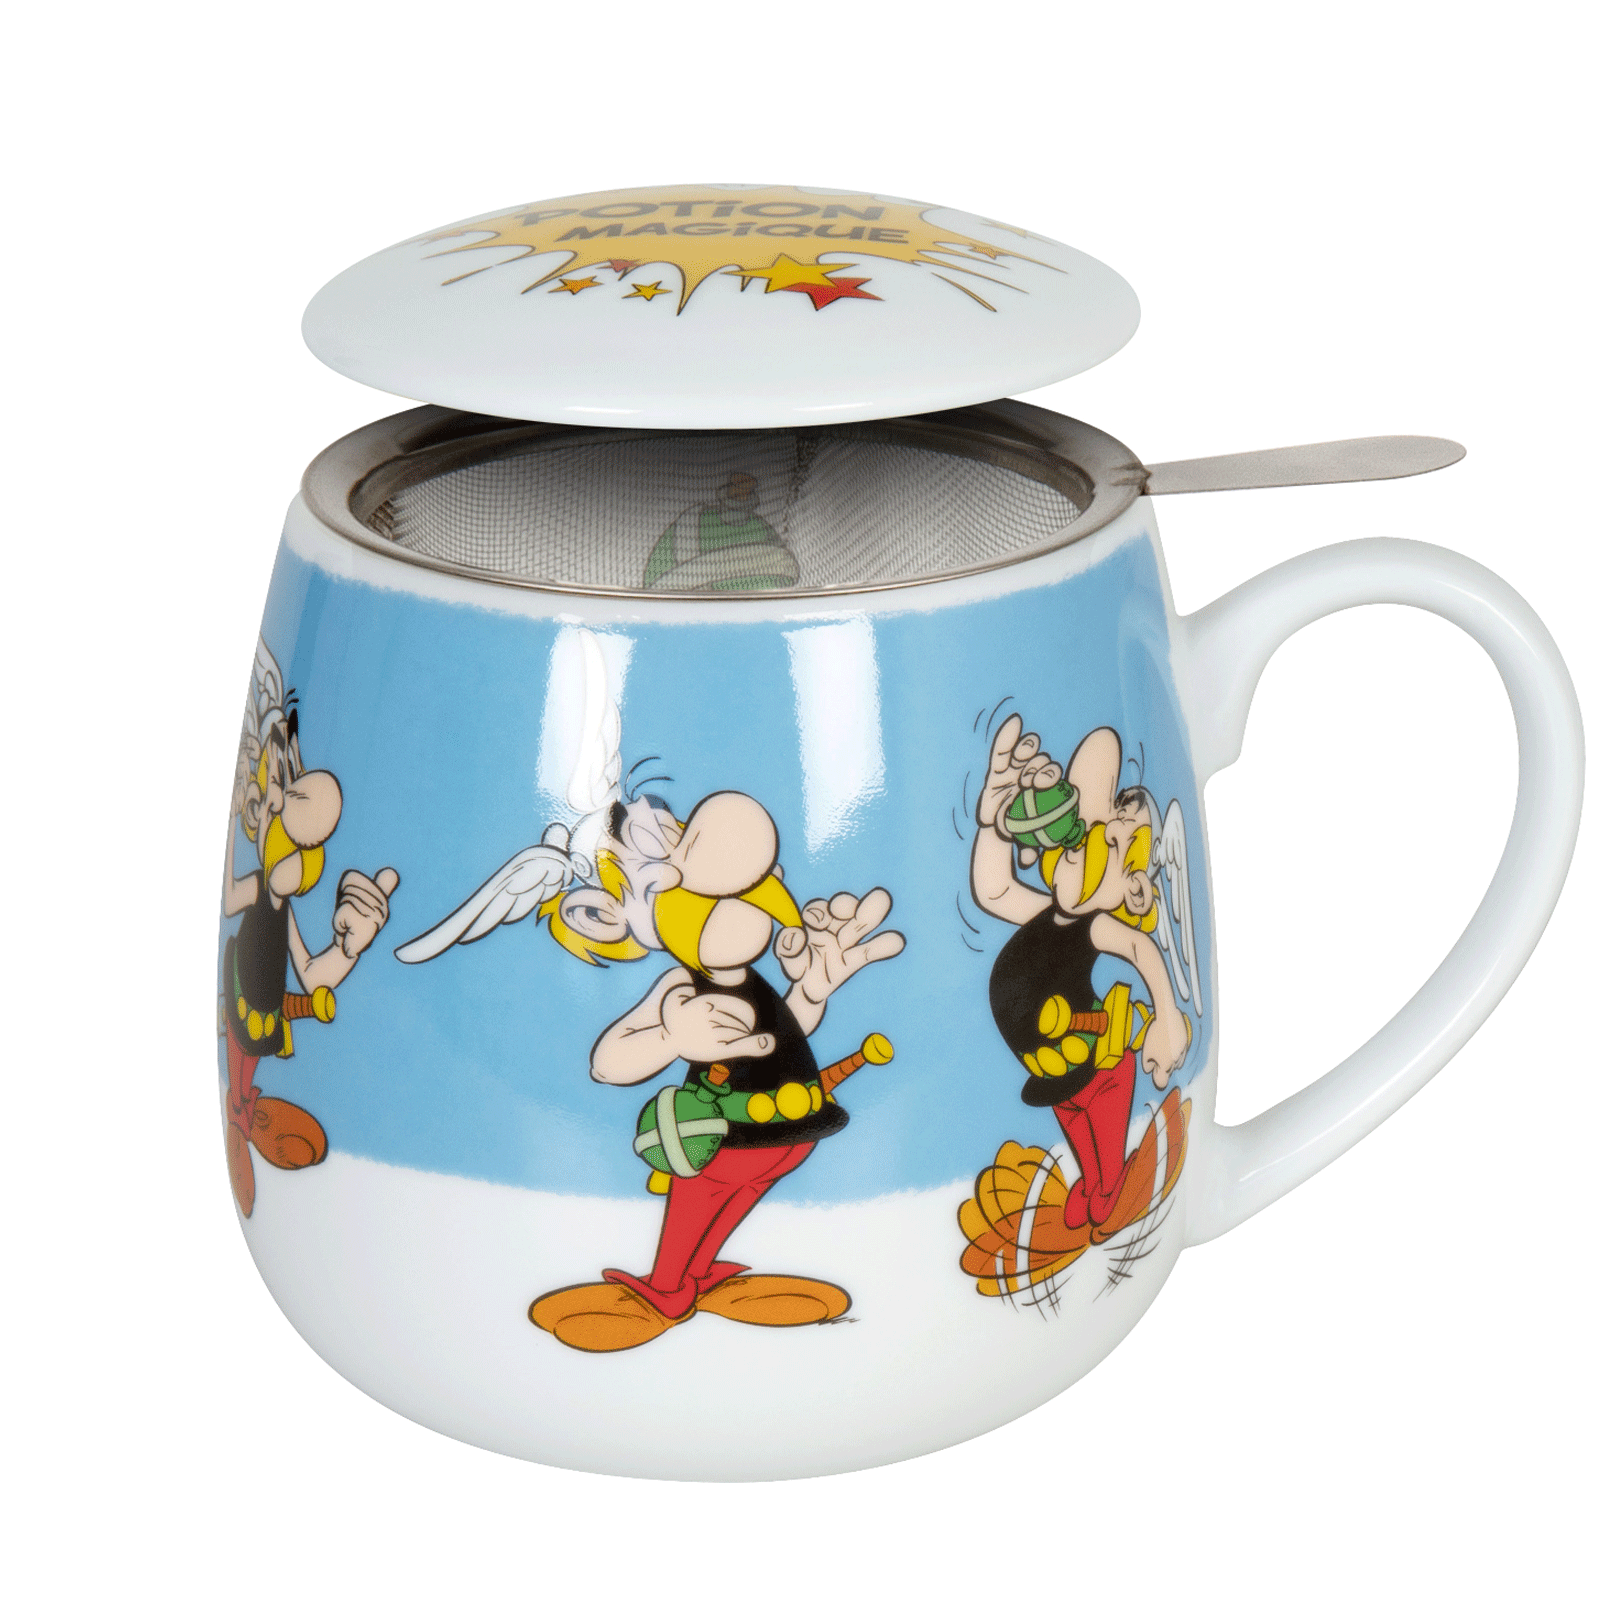 Kubek z zaparzaczem - Asterix - Magiczny napój - Könitz